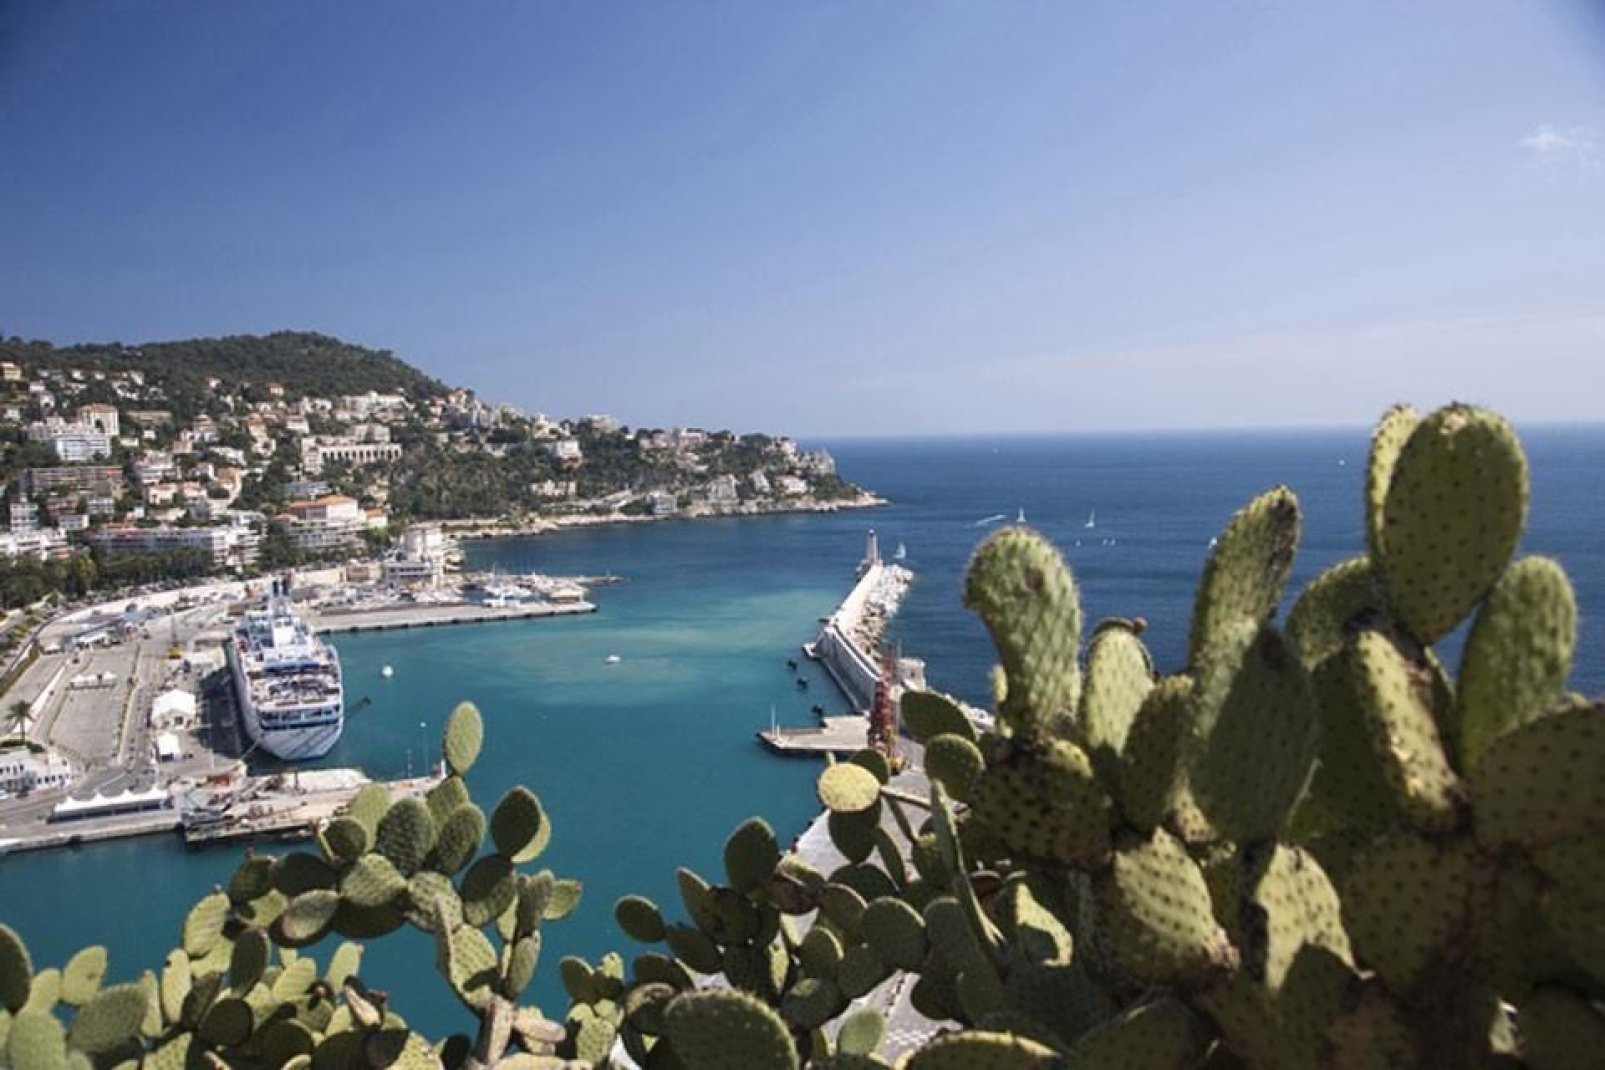 Vom Hafen in Nizza werden regelmäßig Überfahrten zur nahen Insel Korsika durchgeführt. Der Place Cassini gegenüber der Kais ist zukünftig nach der Insel der Schönheit benannt.